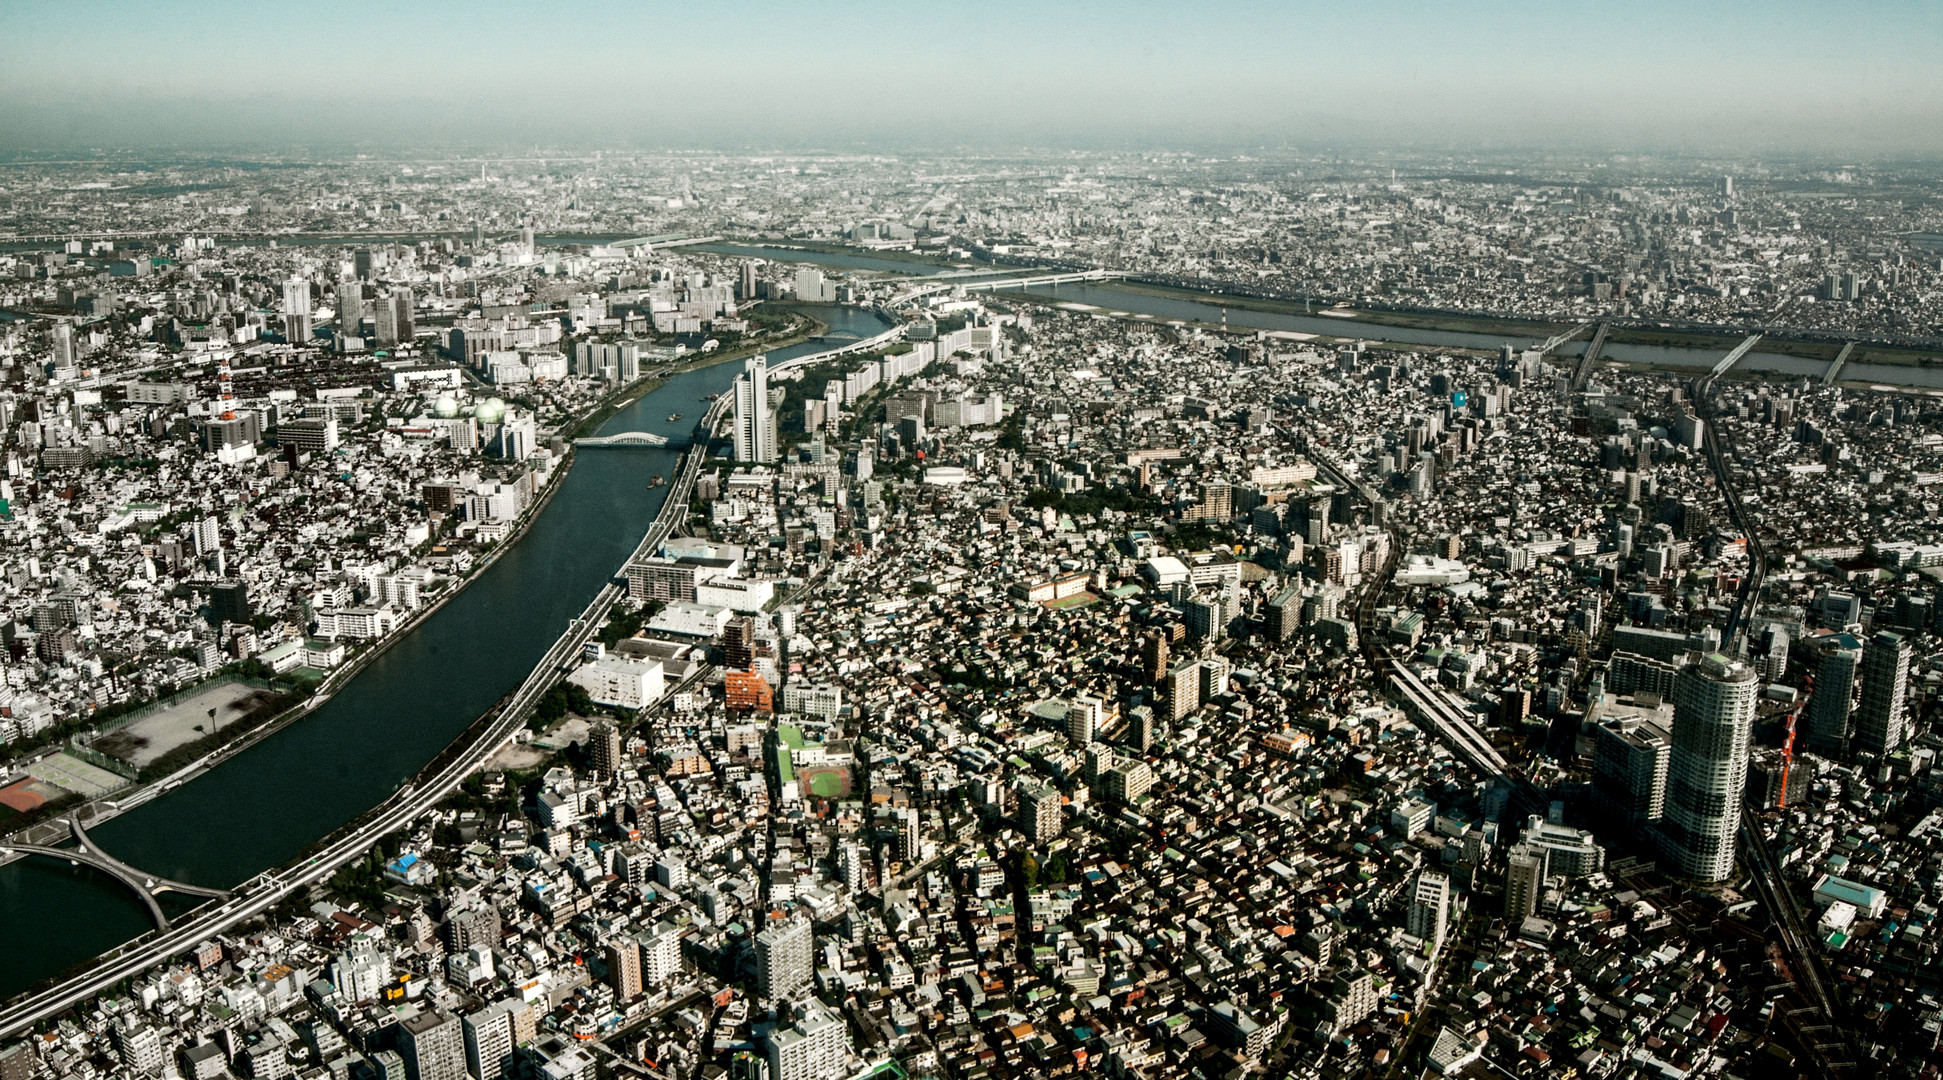 Sumida River in Tokyo